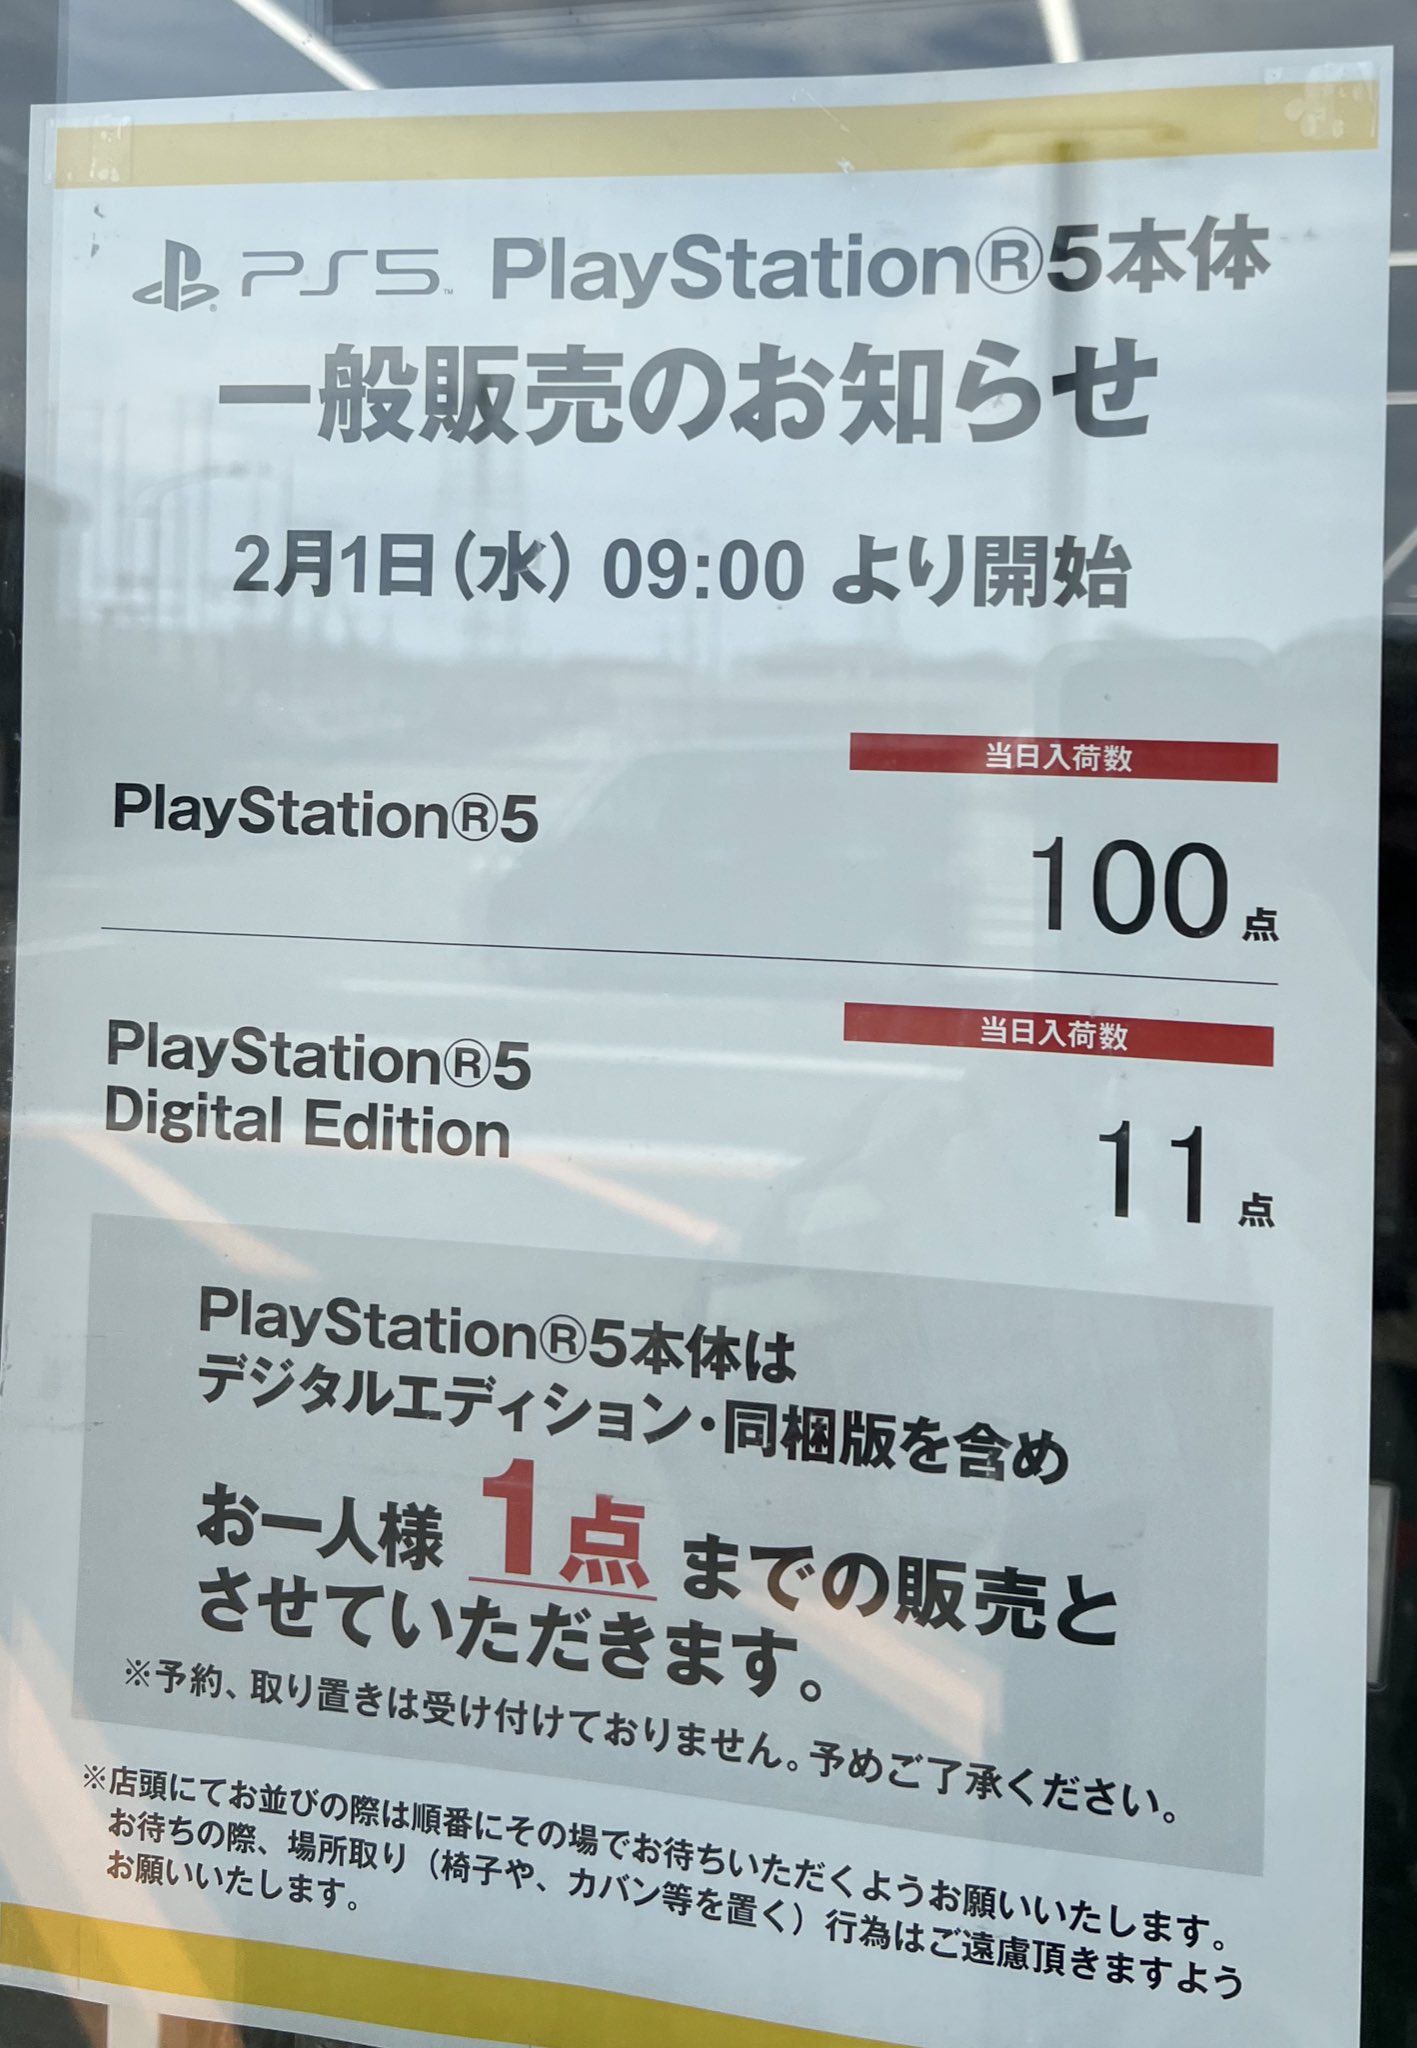 PlayStation 5 im japanischen Fachhandel